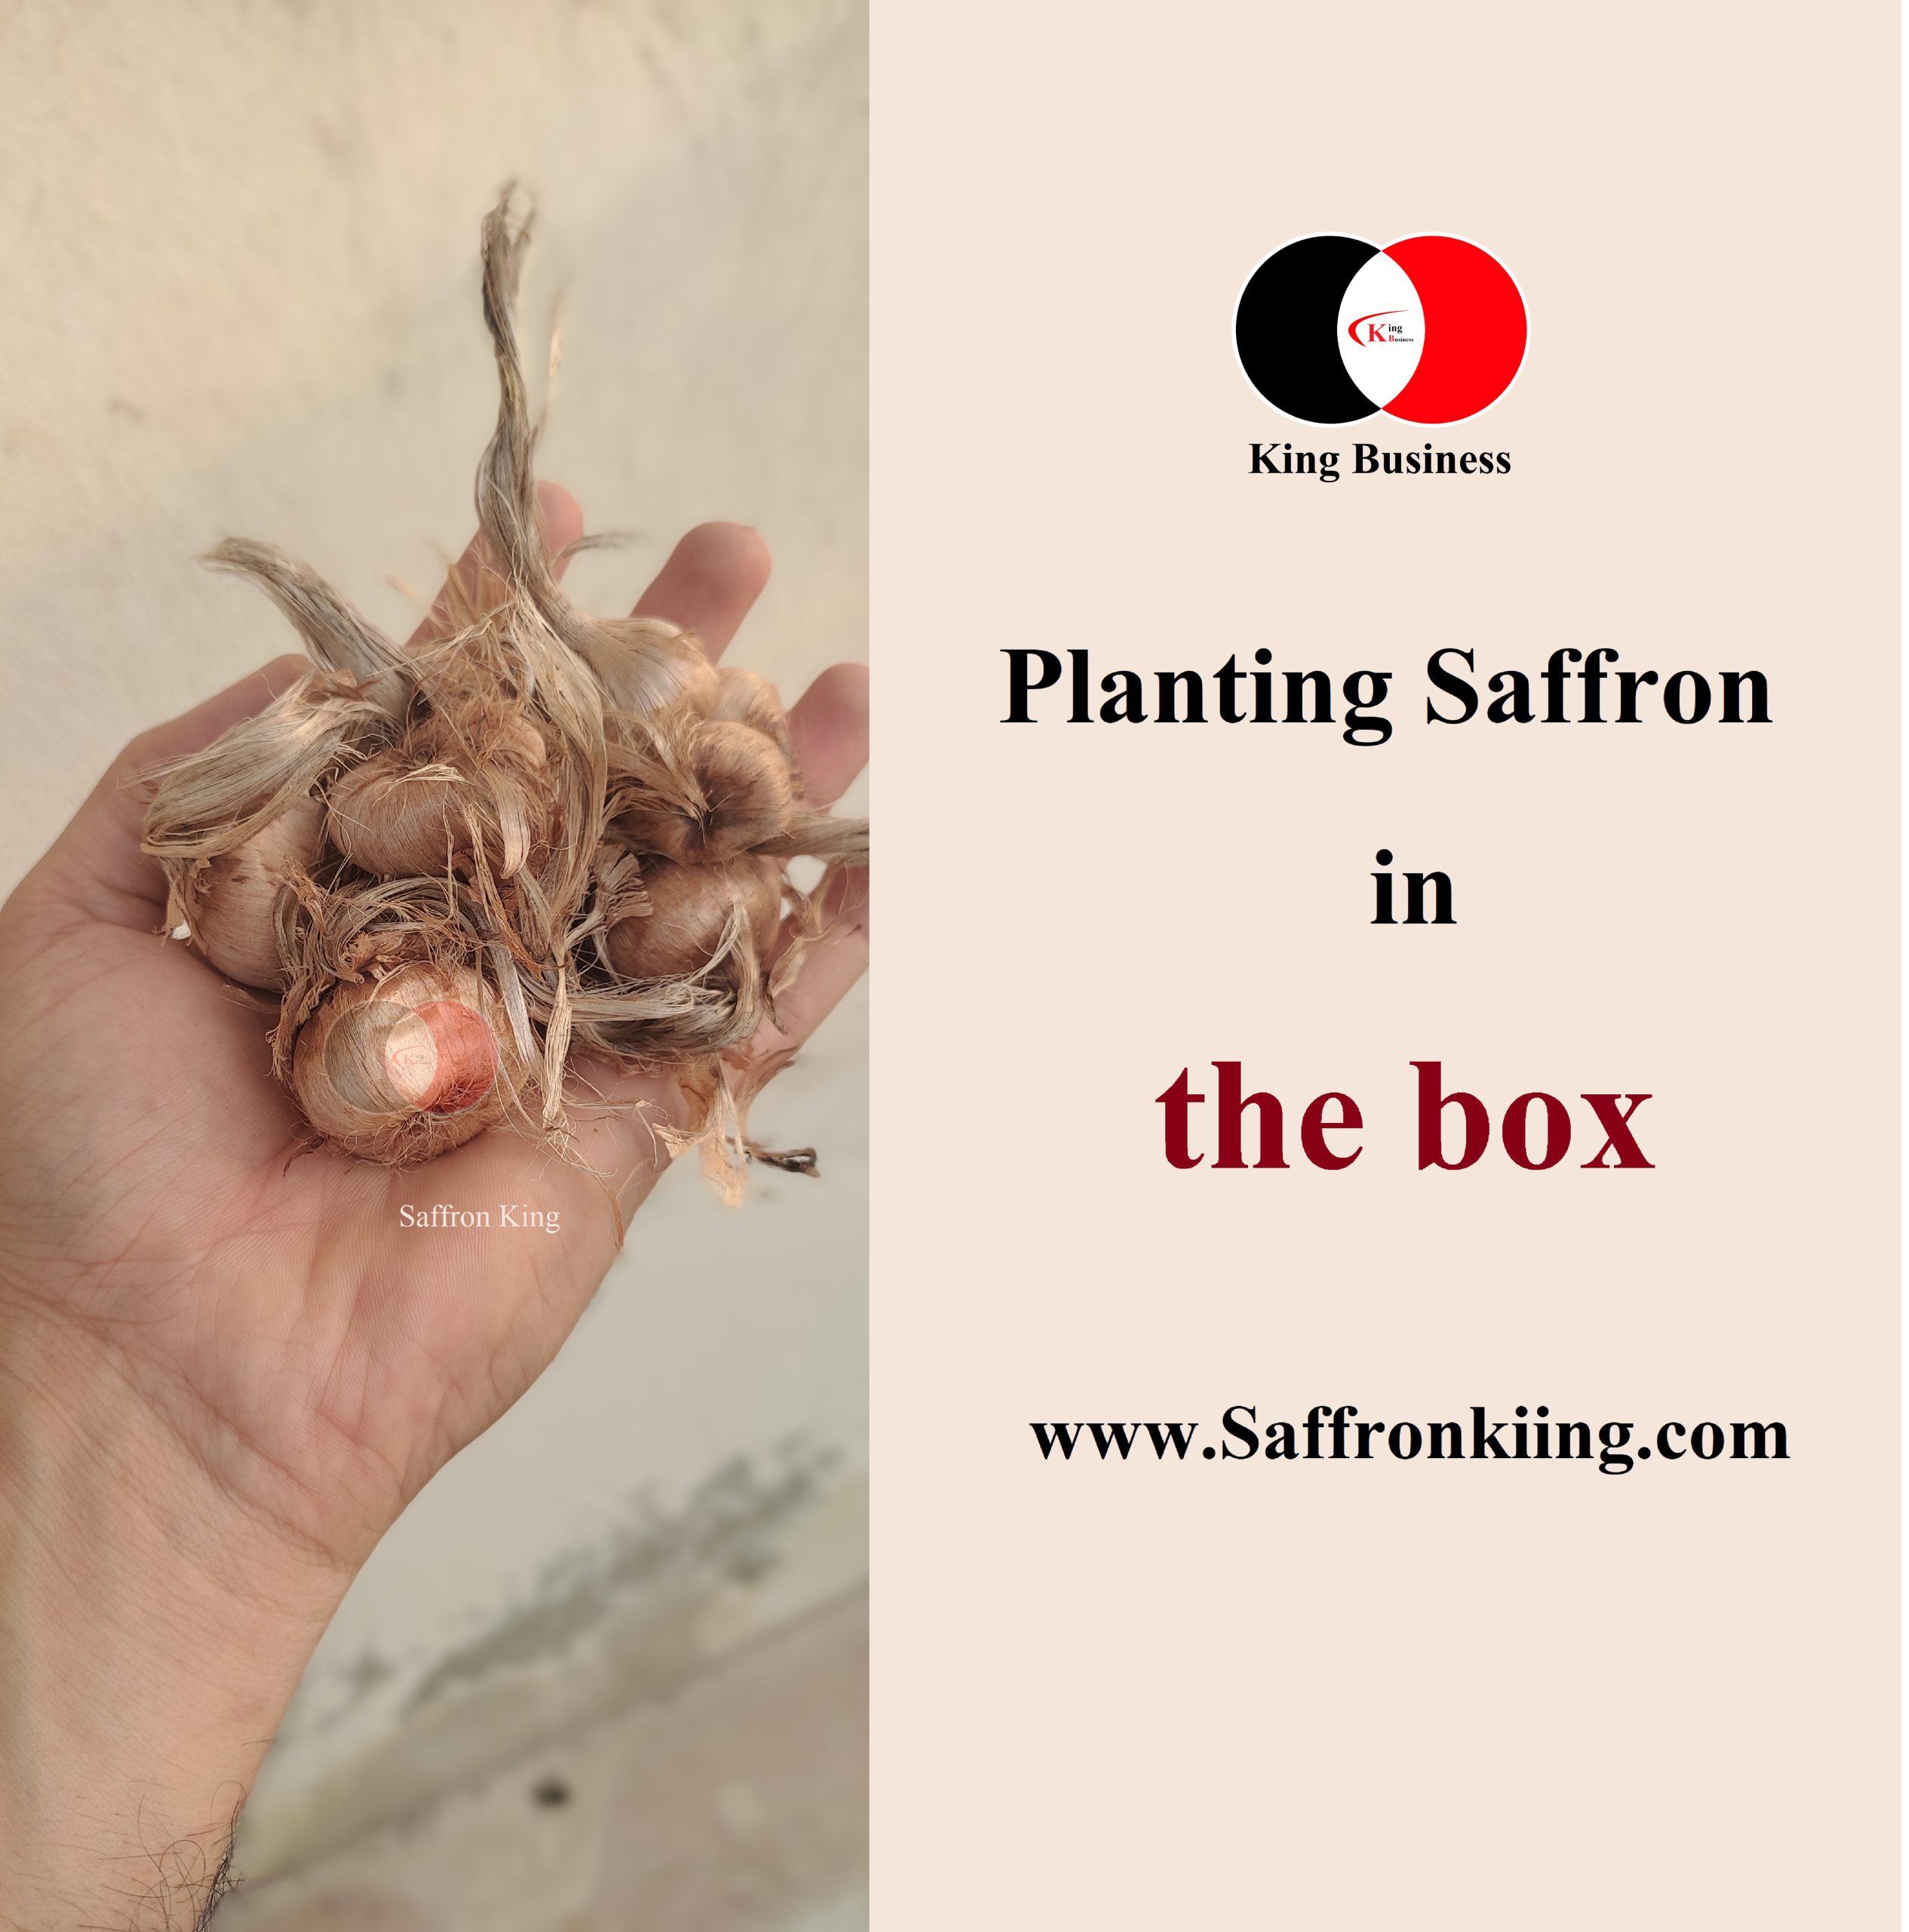 Planting saffron in a box